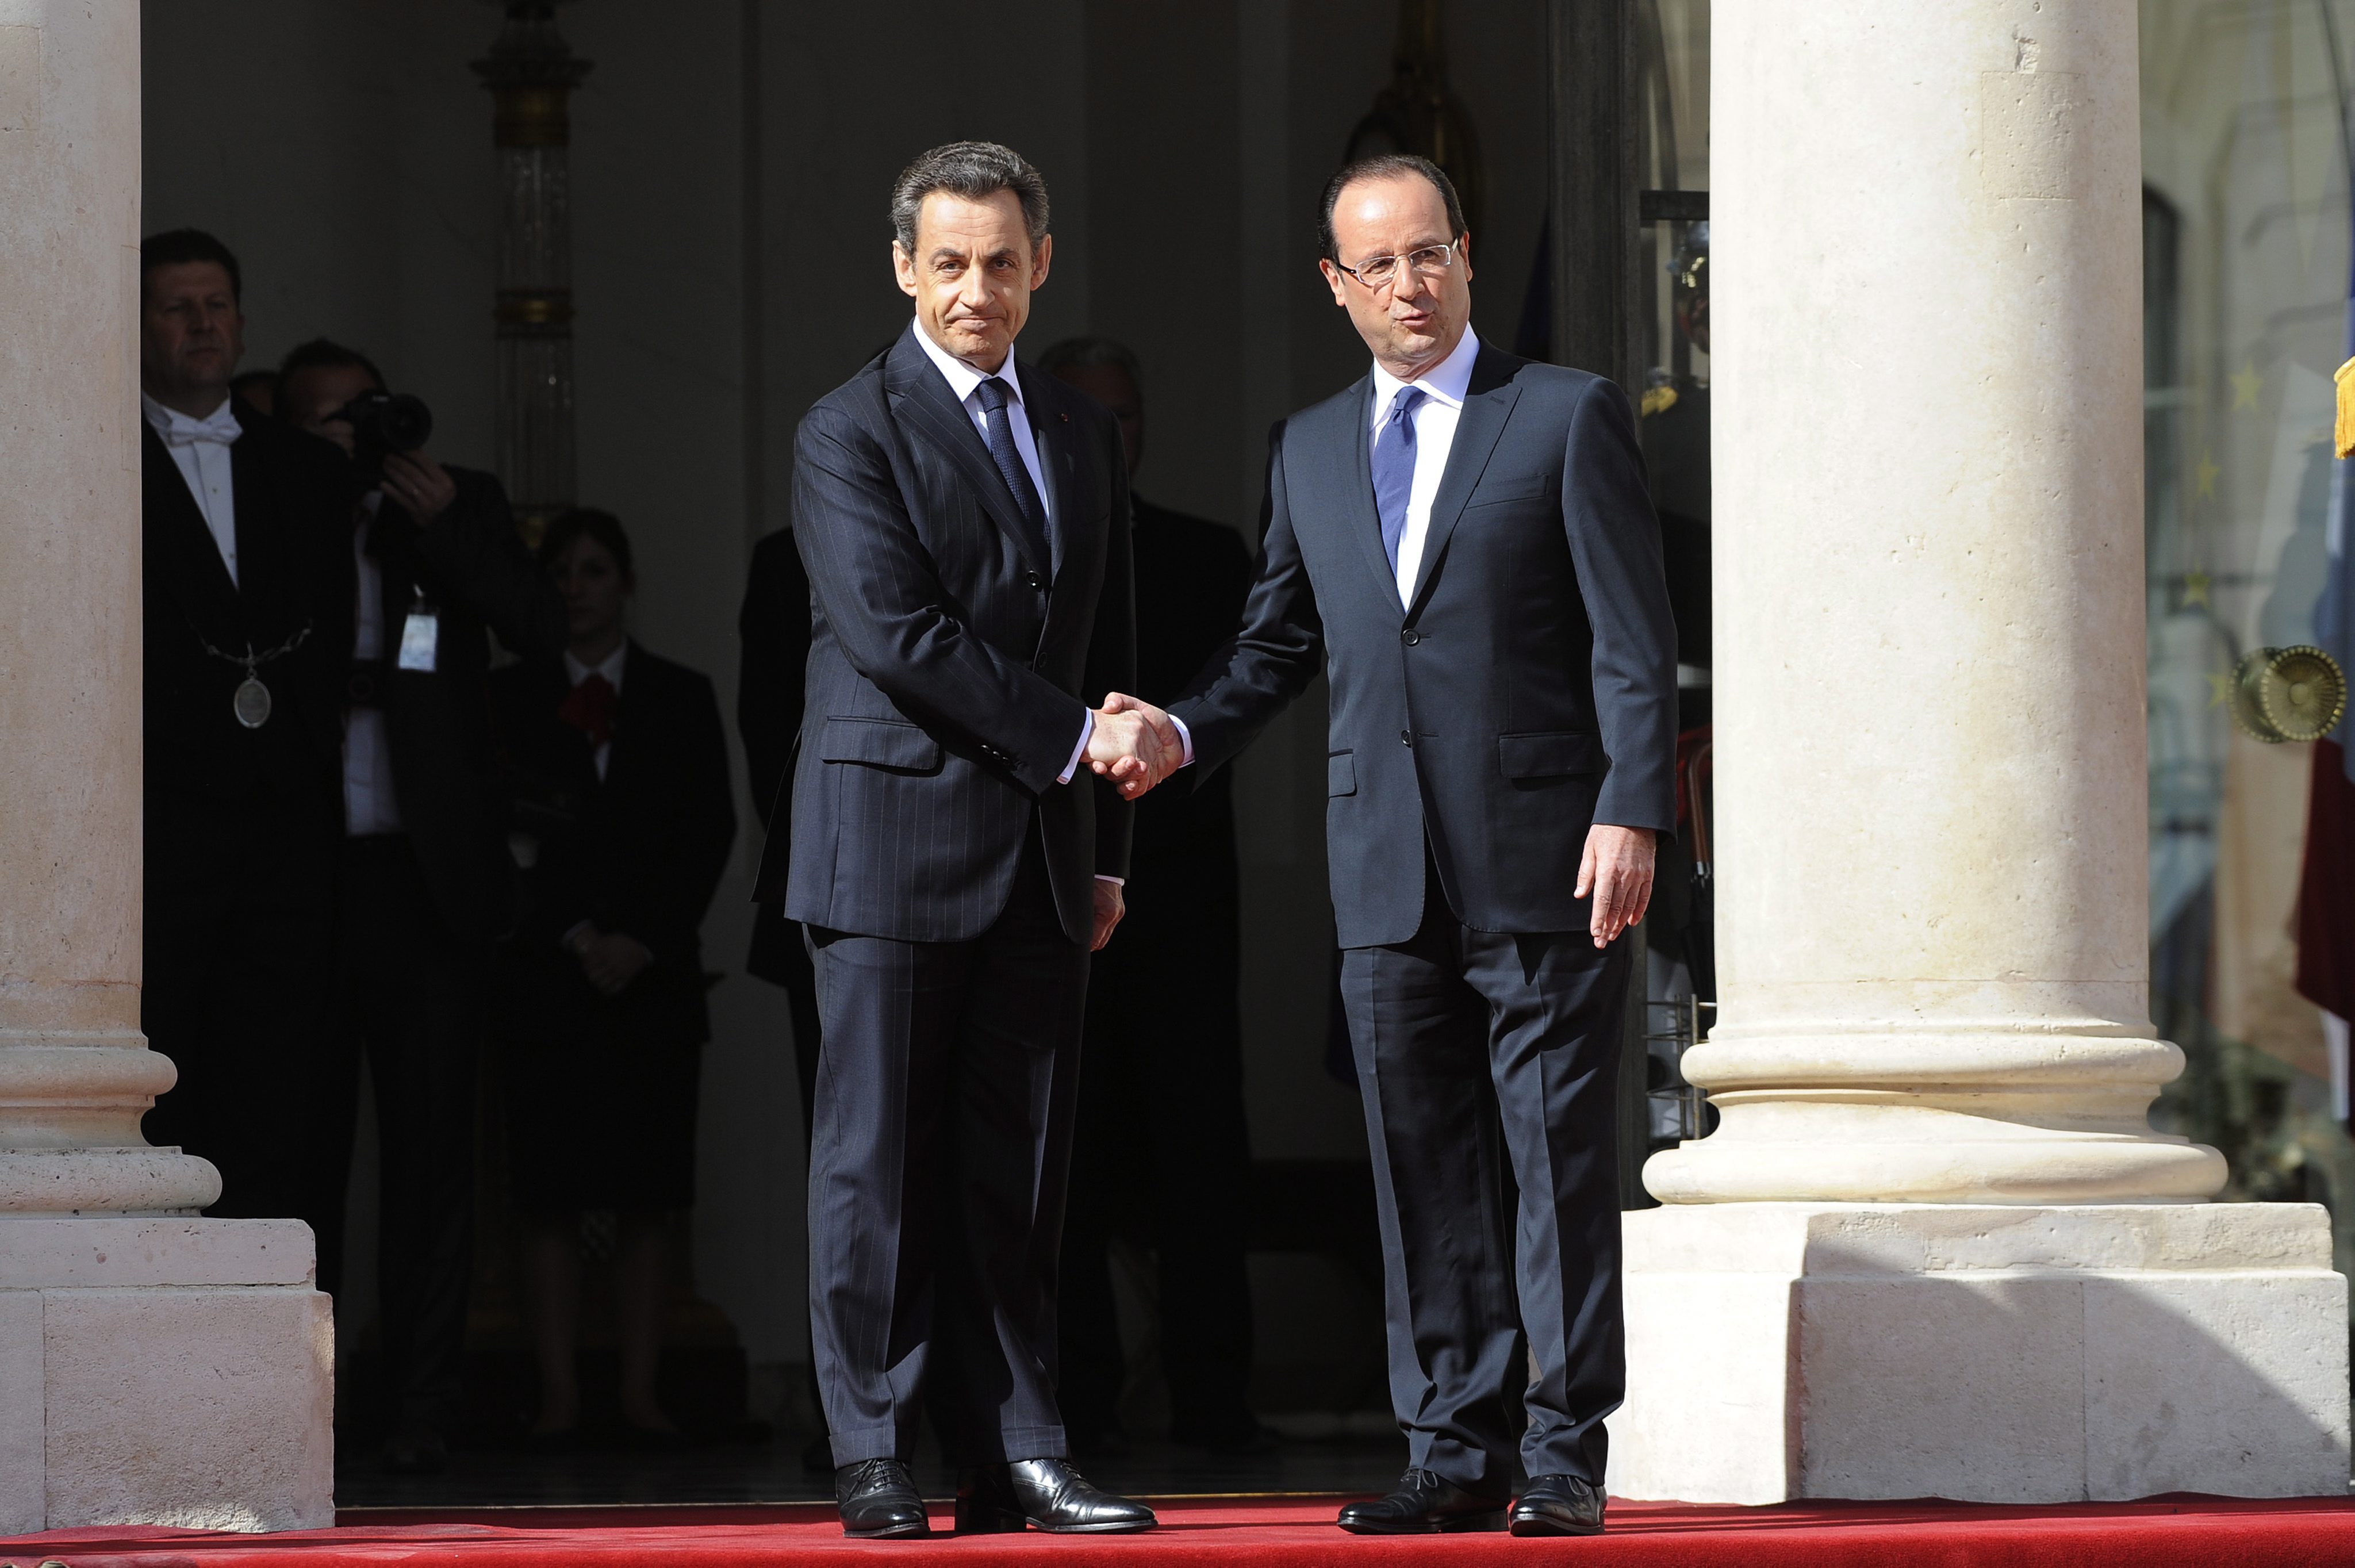 ”Уикилийкс” твърди, че АНС е подслушвала Никола Саркози и Франсоа Оланд